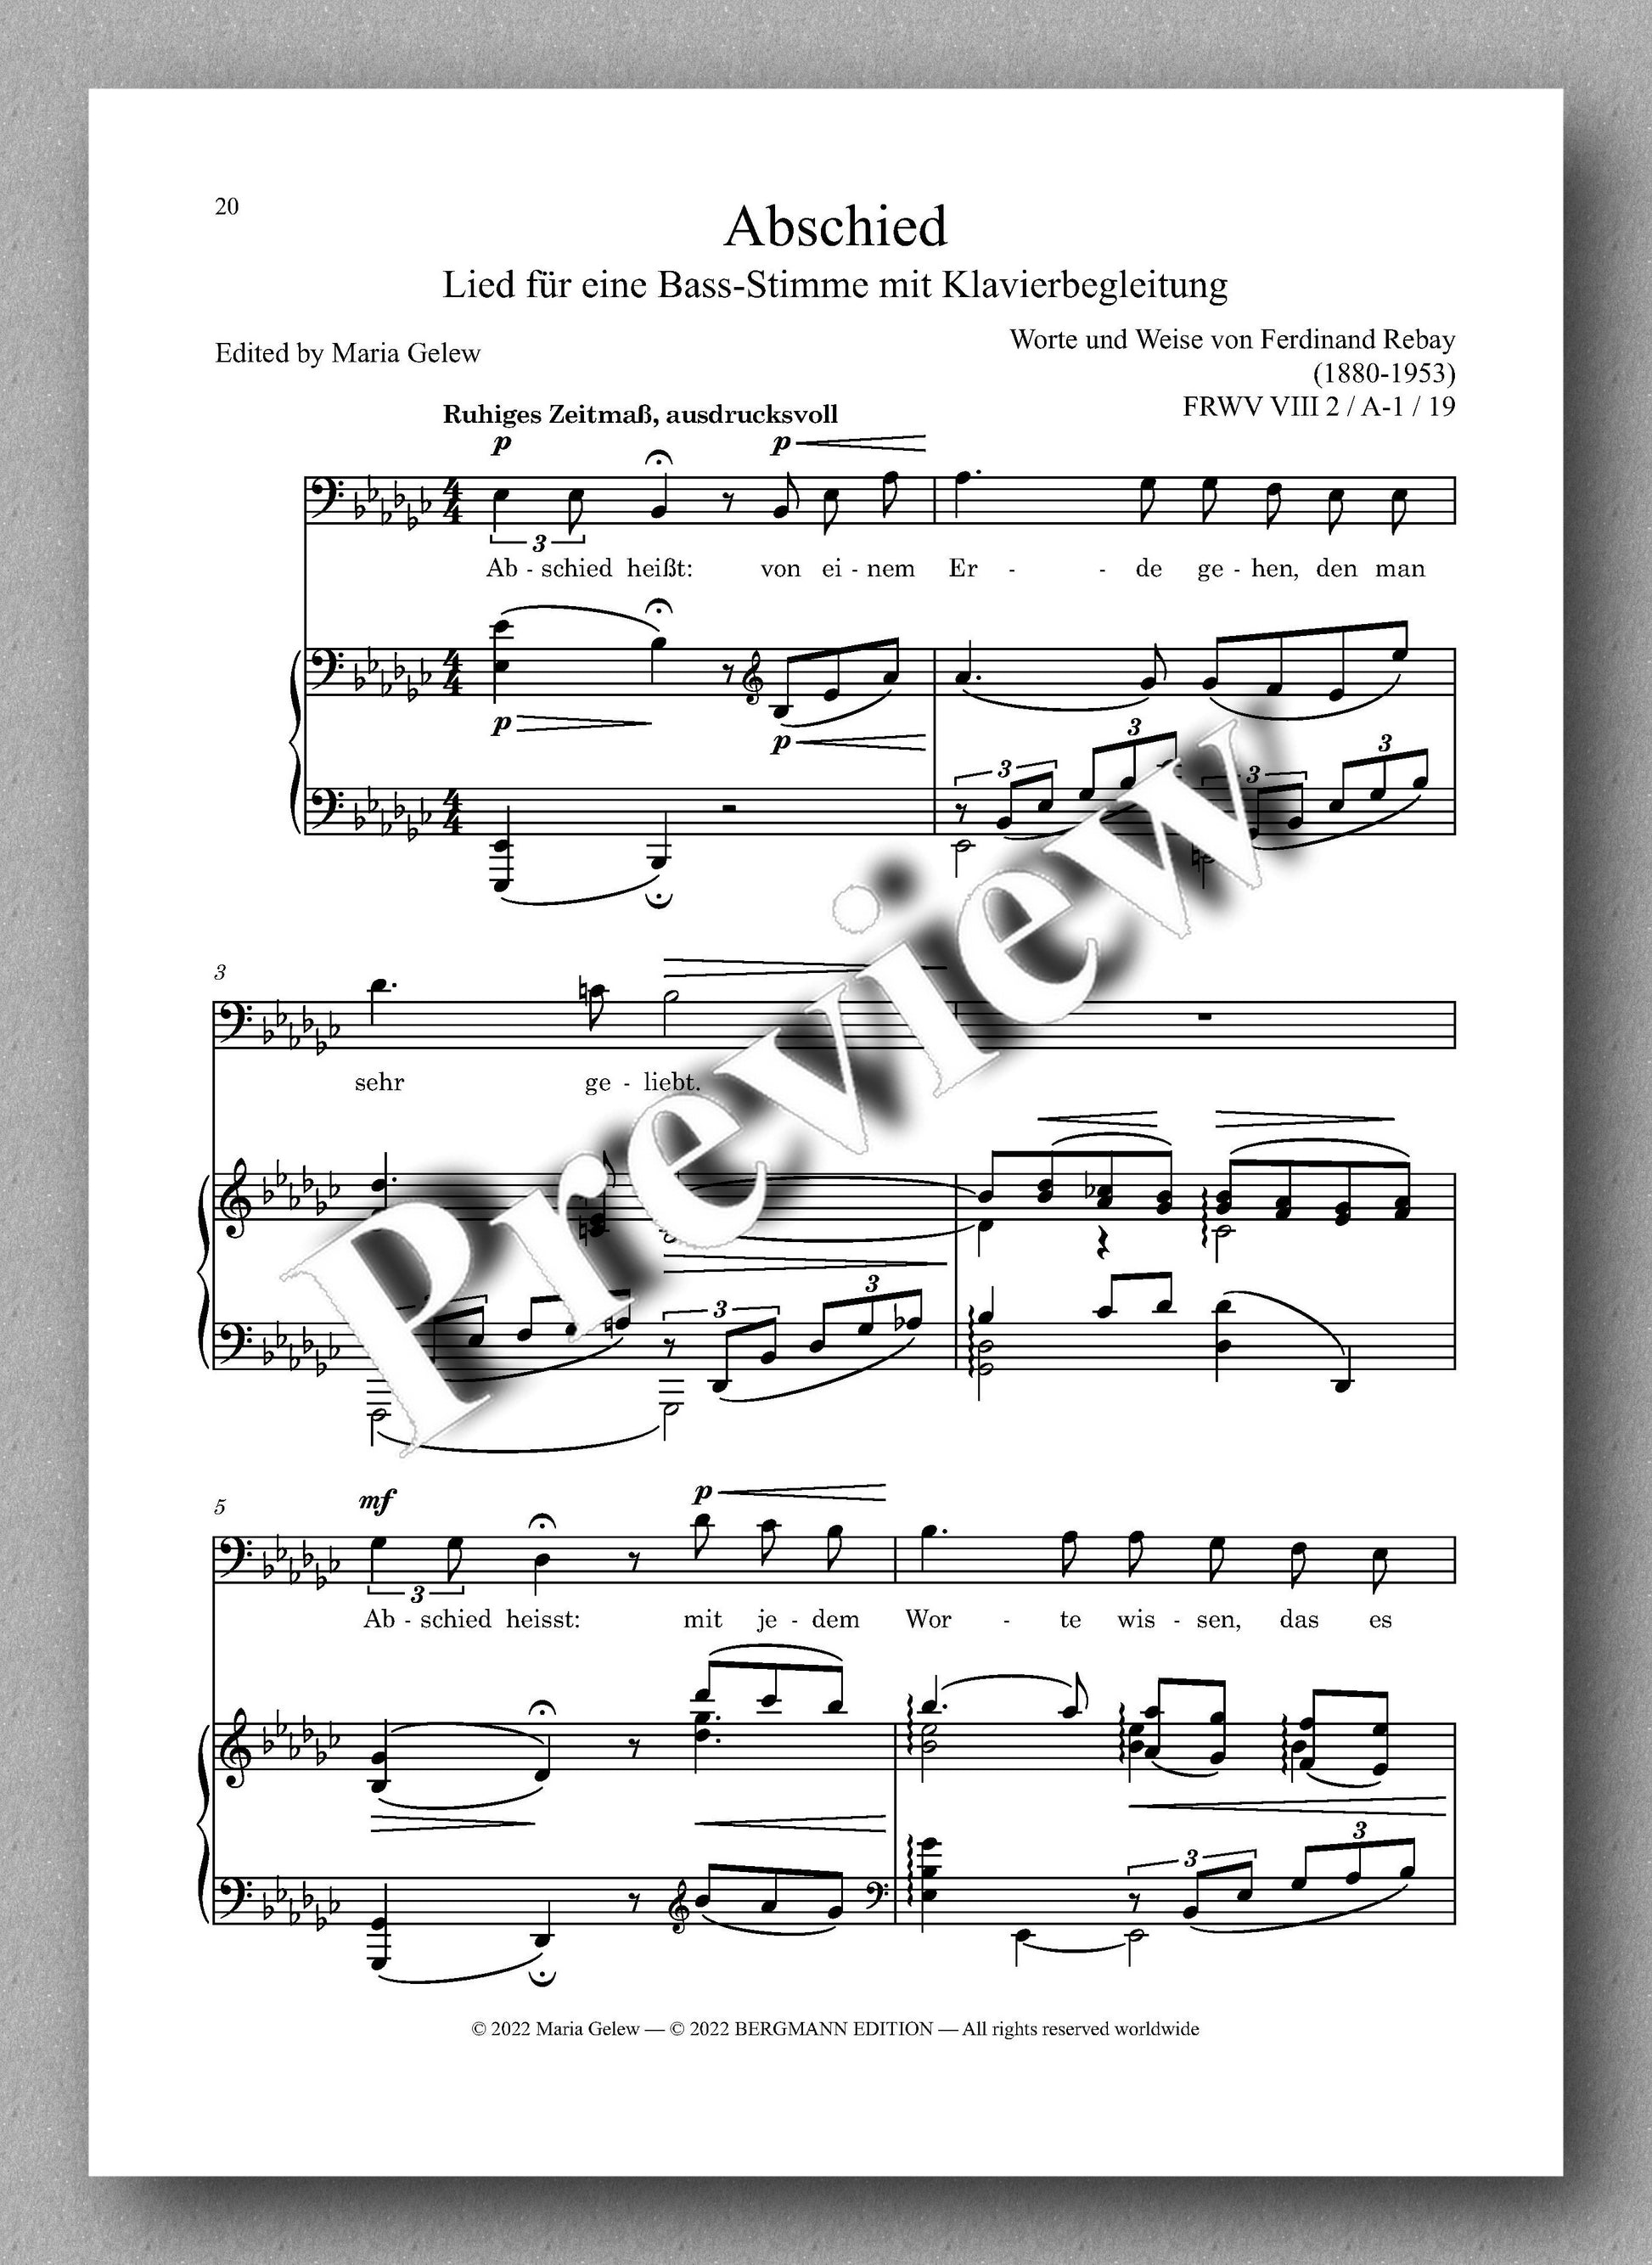 Ferdinand Rebay, Lieder nach eigenen Texten (1930-1950) - preview of the Music score 3